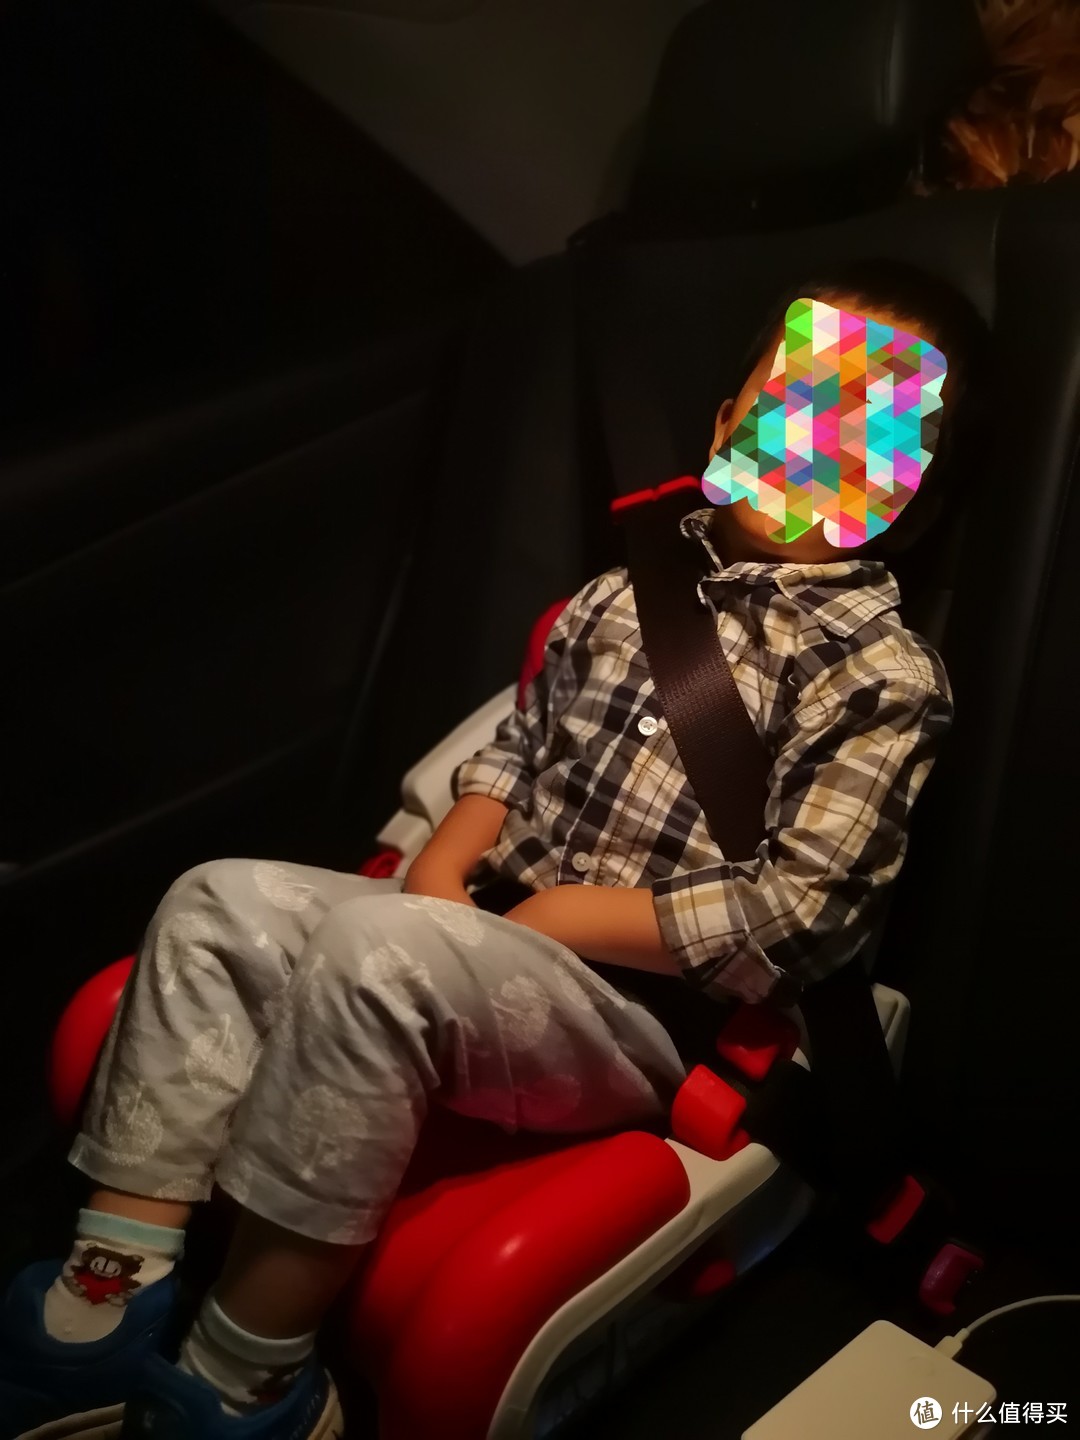 70迈 儿童安全座椅评测报告